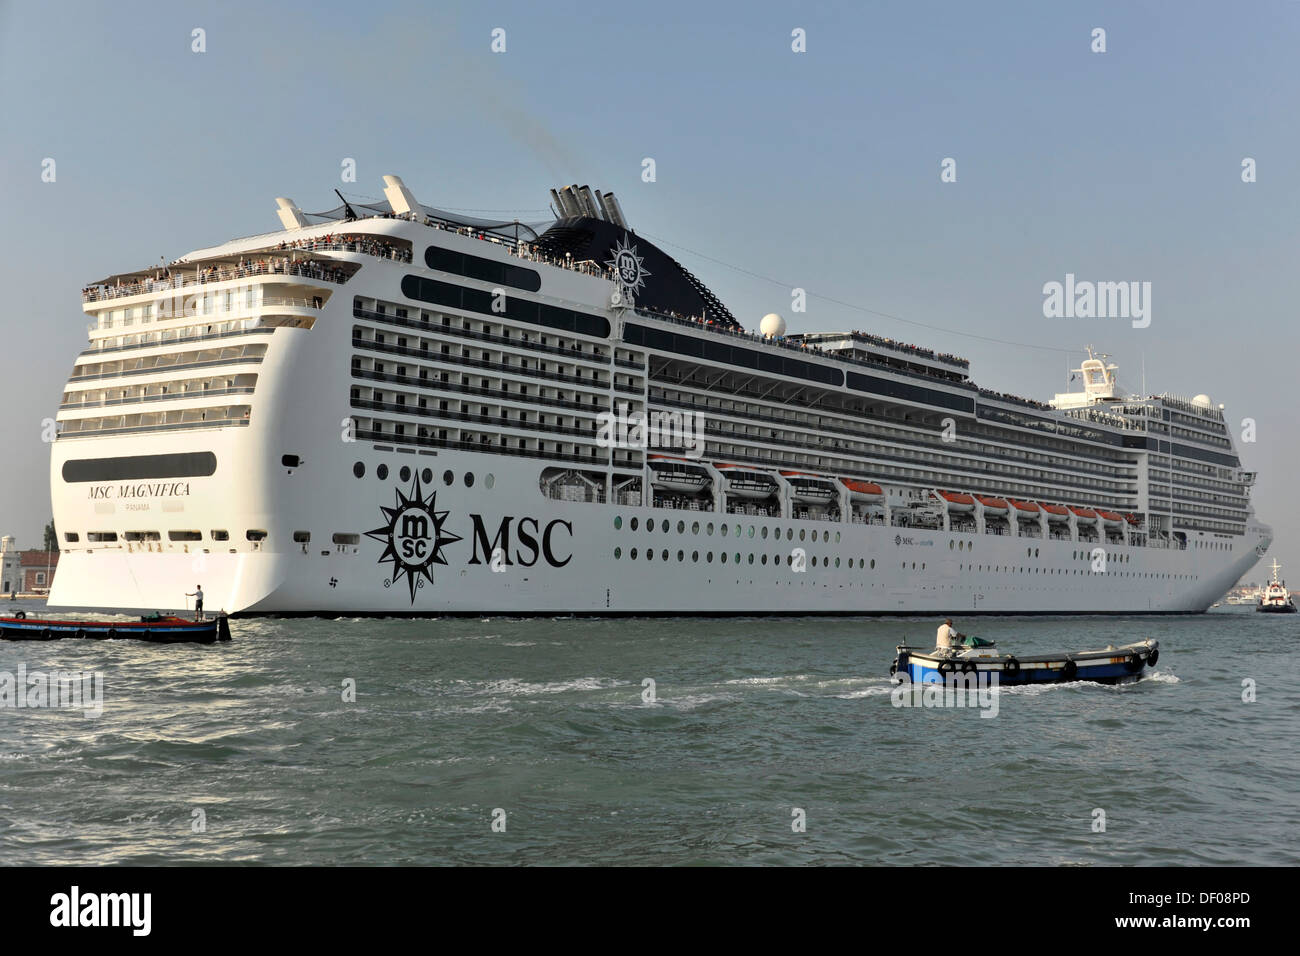 MSC Magnifica, la nave di crociera, costruito nel 2010, 293.8 m, 2550 i passeggeri in arrivo nel porto di Venezia, Veneto, Italia, Europa Foto Stock